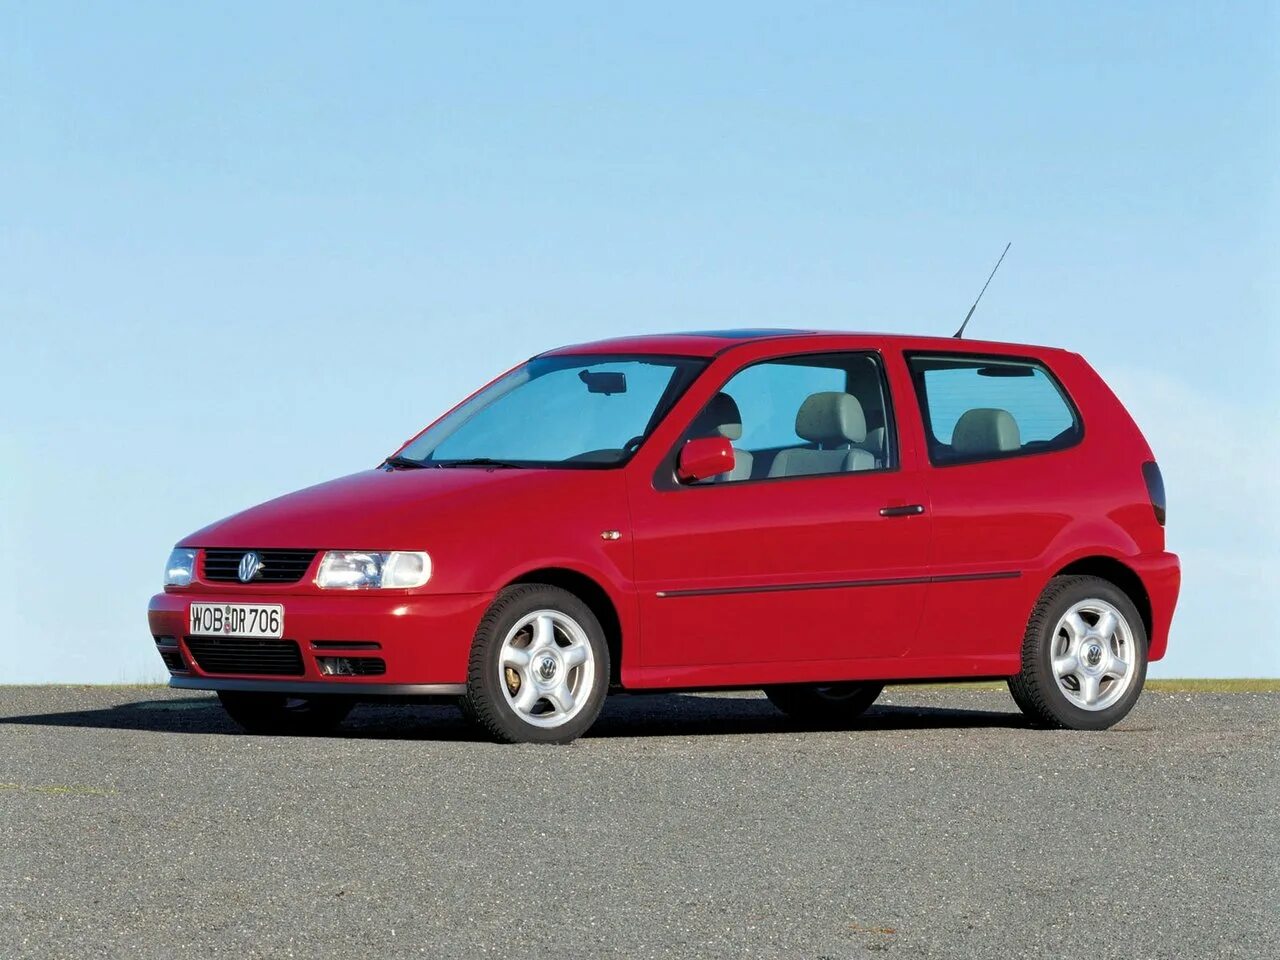 Volkswagen Polo, III, 1994 — 2002. Volkswagen Polo III. Volkswagen Polo 3 хэтчбек. Volkswagen Polo, III, 1994 — 2002, хетчбэк, 3 дв.. Фольксваген поло 3 поколение